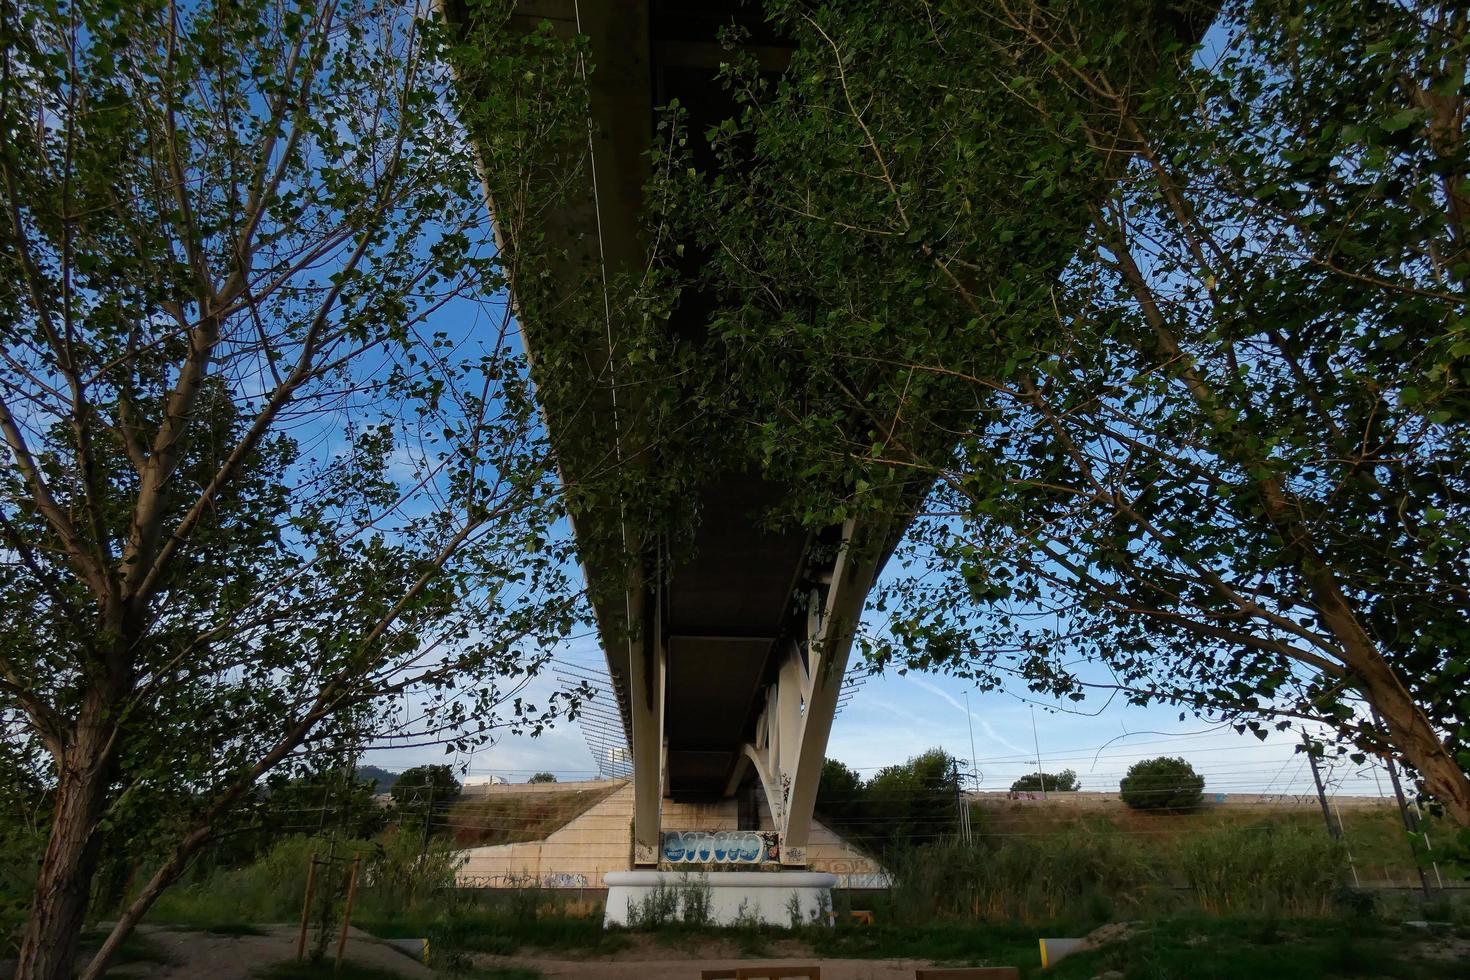 brug over- de llobregat rivier, bouwkunde werk voor de passage van auto's, vrachtwagens en bussen. foto